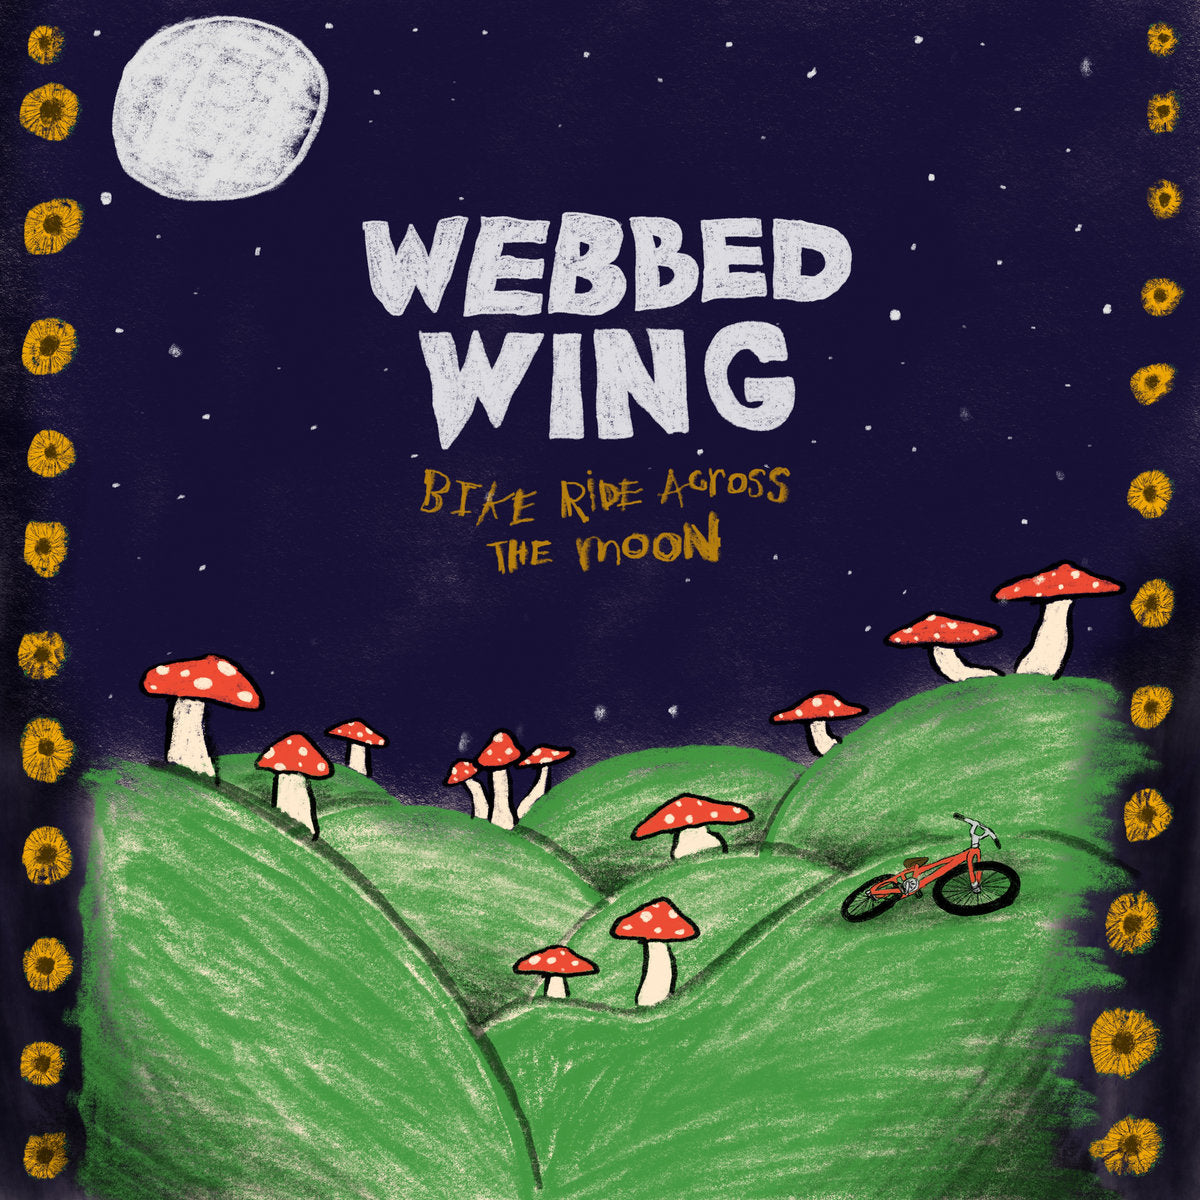 Webbed Wing "Bike Ride Across The Moon" 12" Vinyl